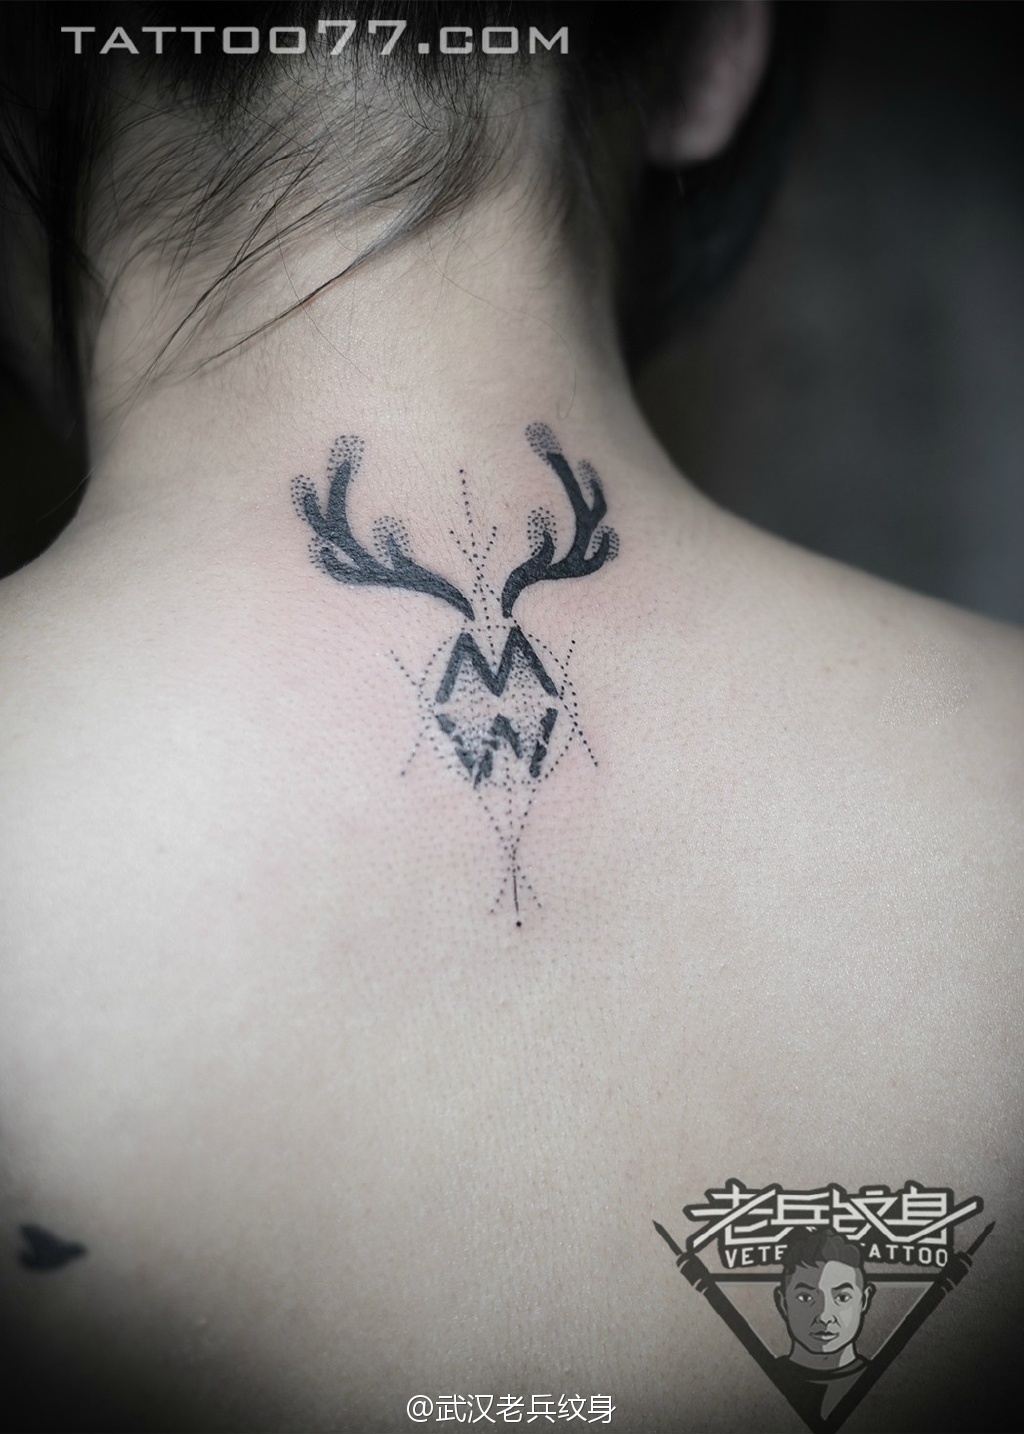 背部麋鹿几何点刺纹身图案作品